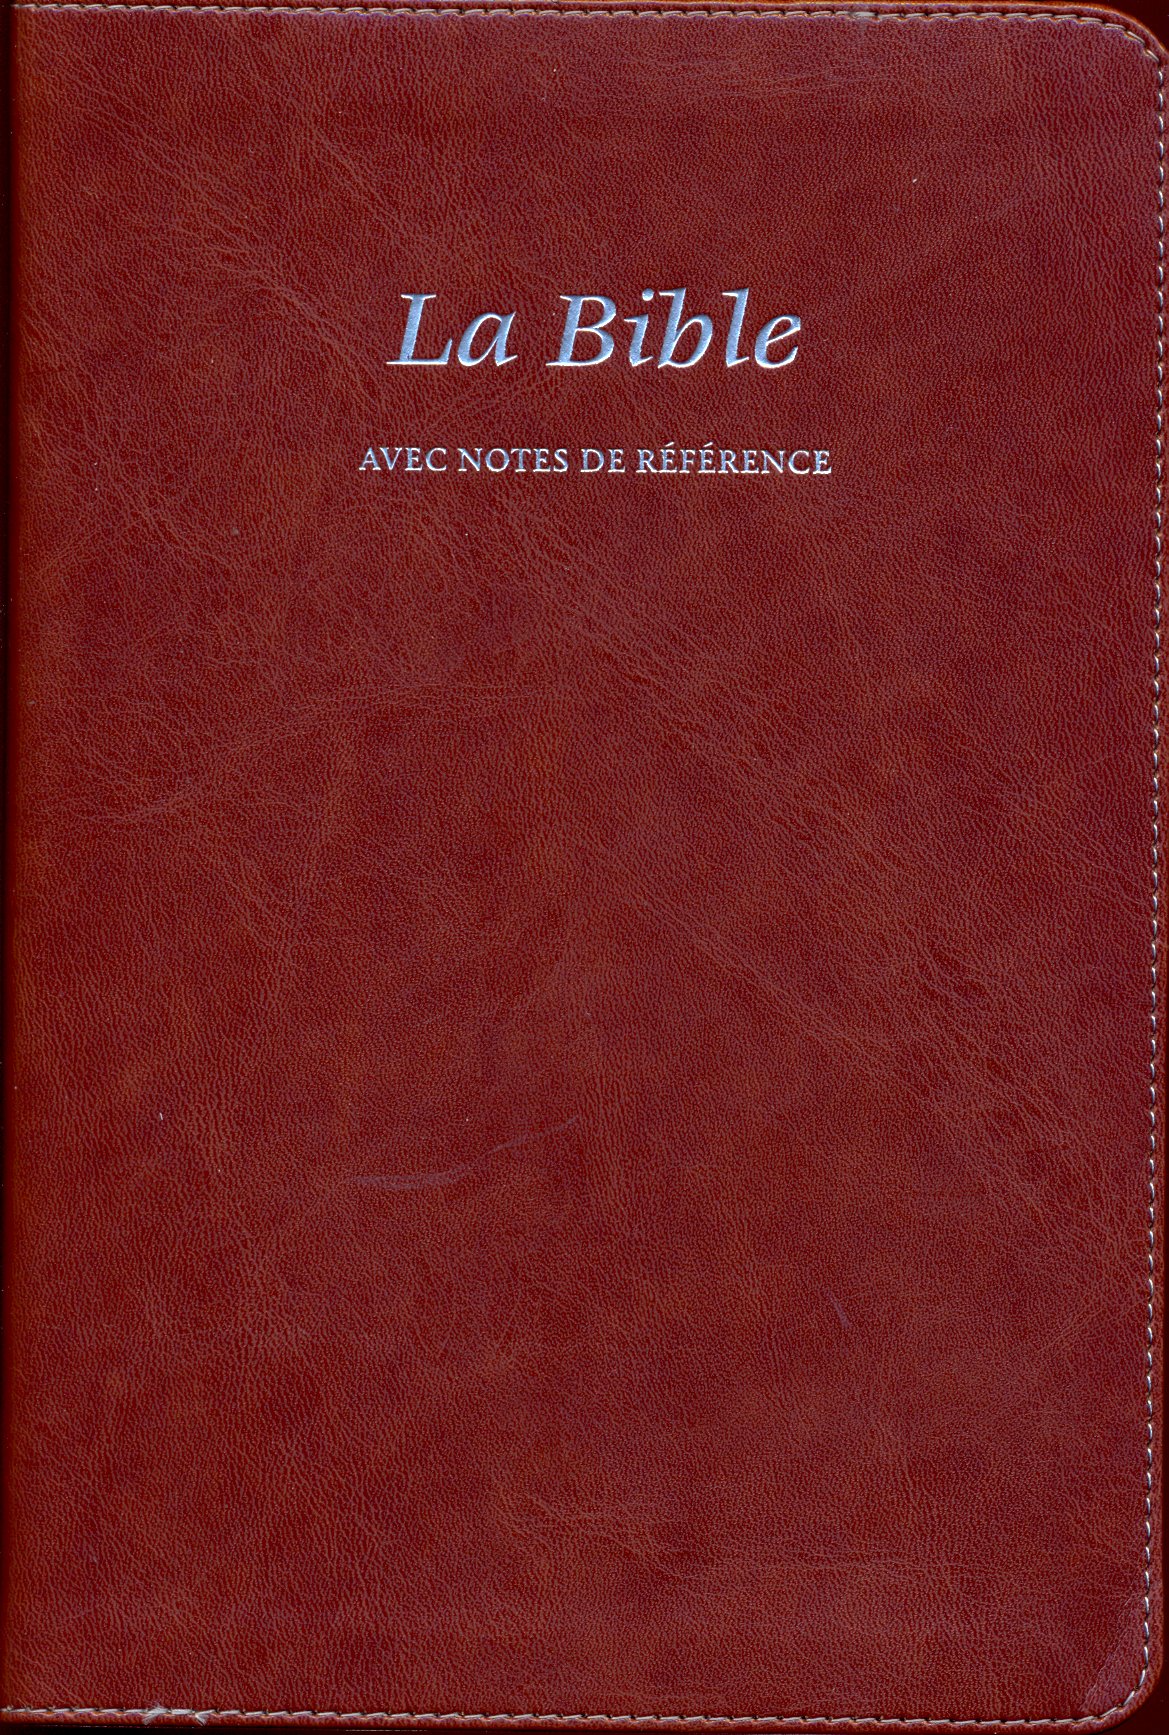 Bible avec notes de référence, Segond 21, brune - couverture souple, vivella avec onglets